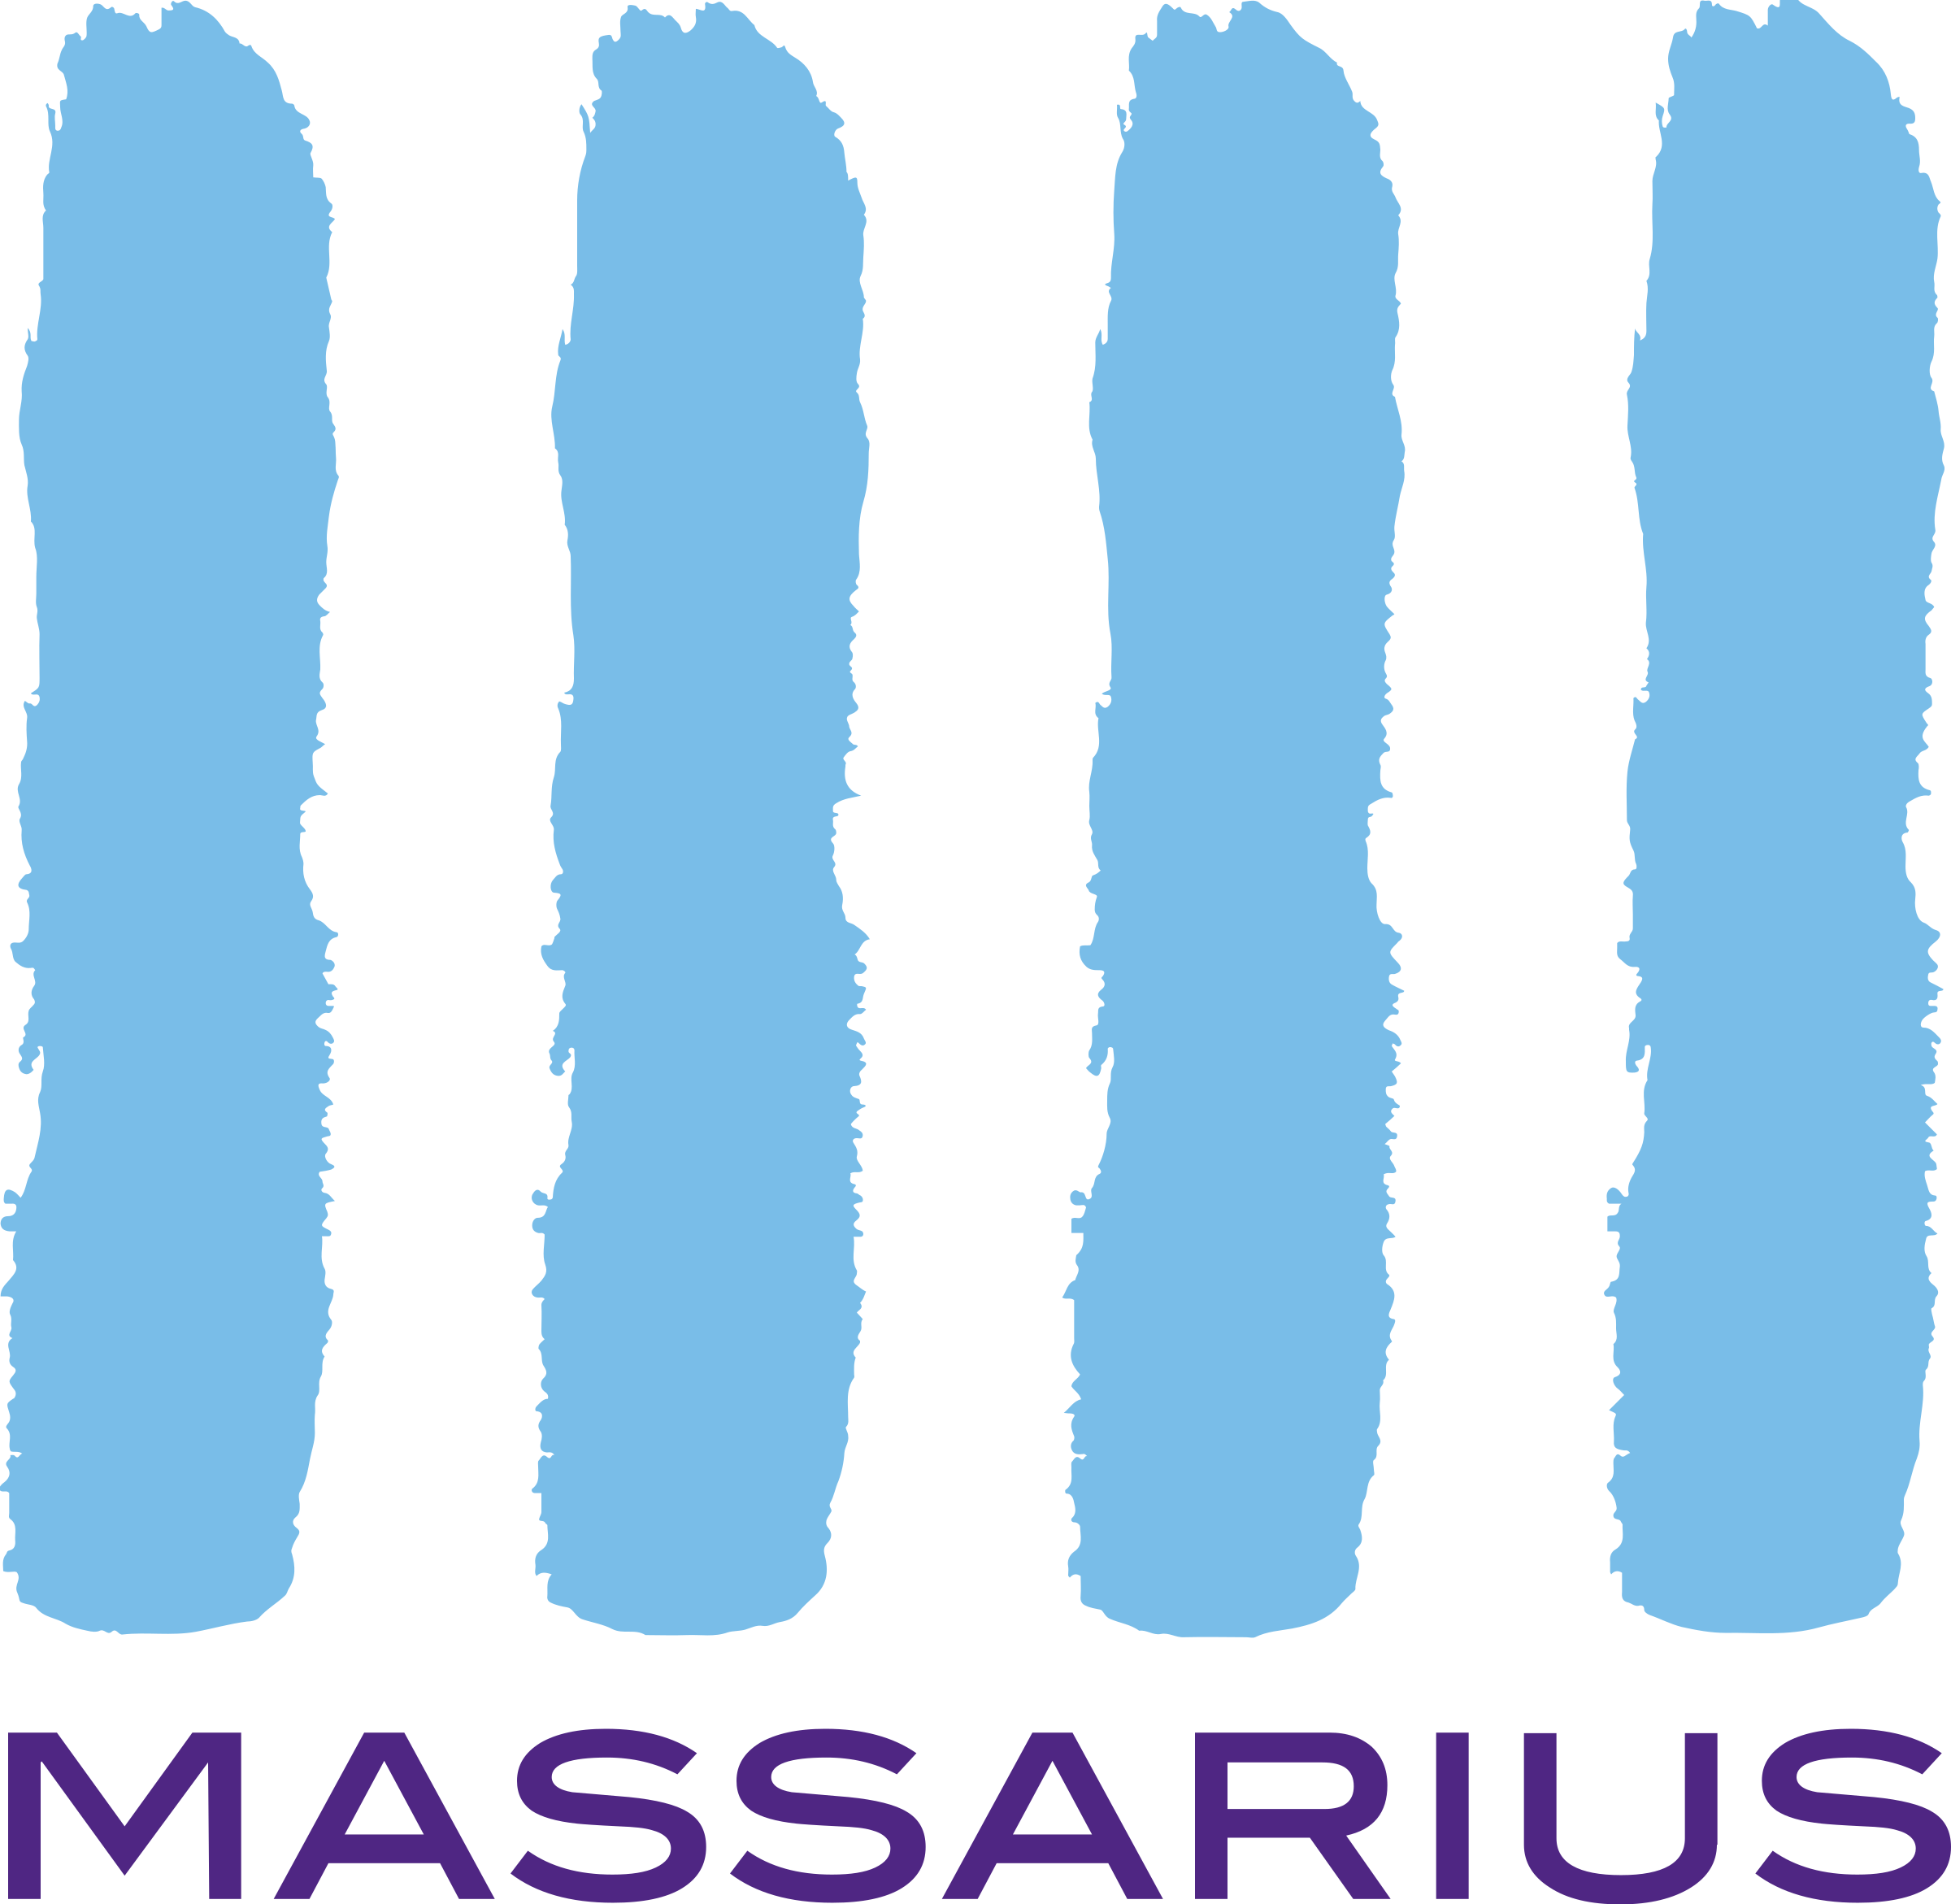 Massarius